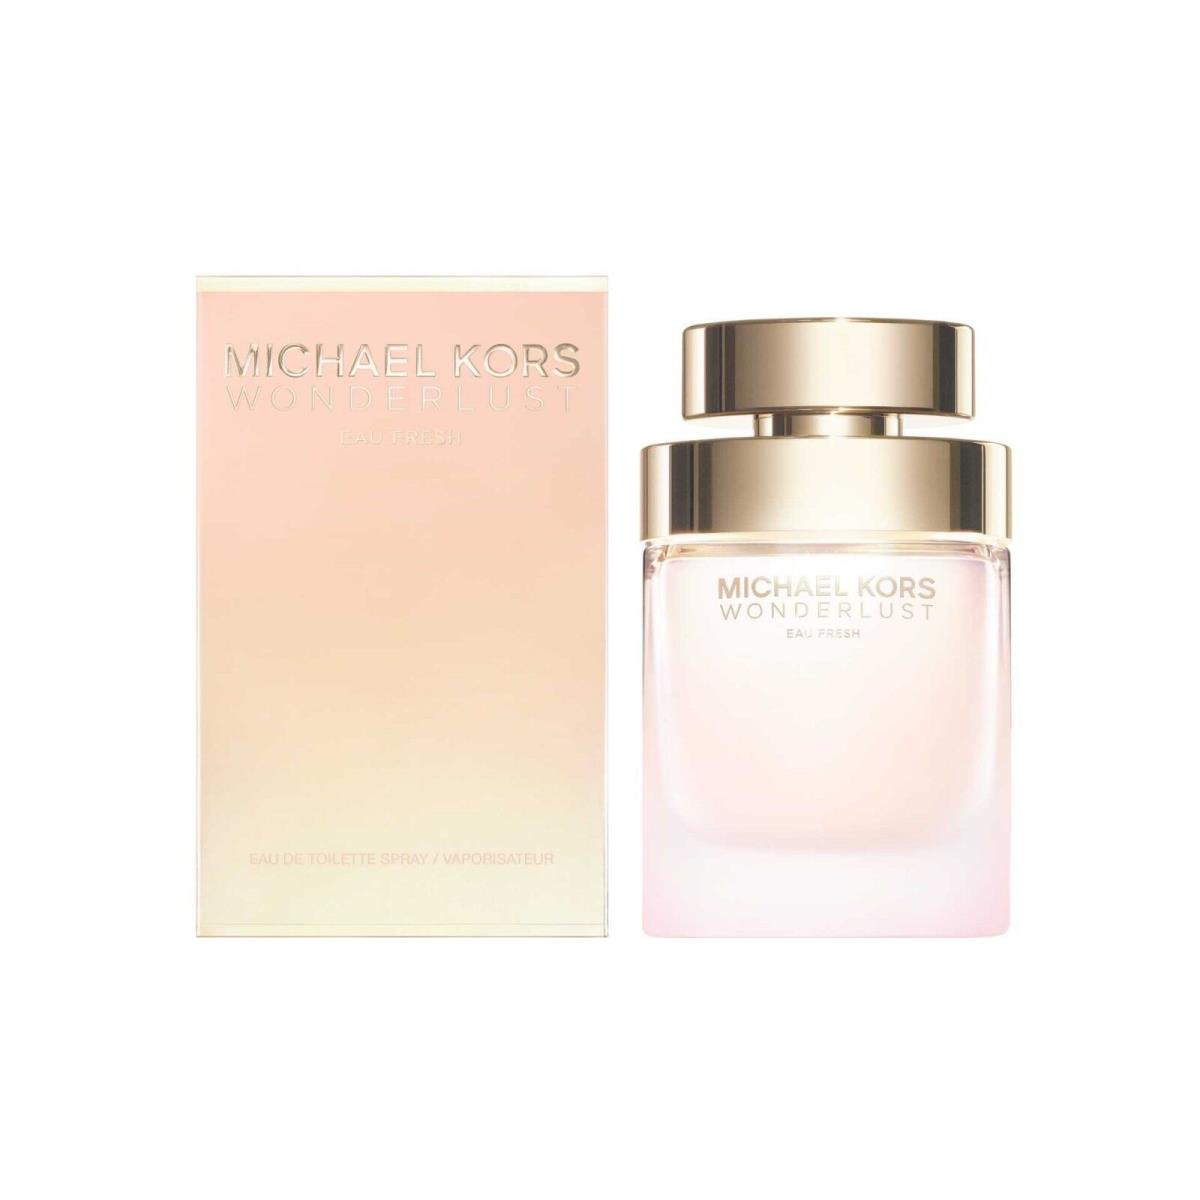 Michael Kors Wonderlust Eau Fresh Perfume For Women 3.4 oz 100ml Edt Spray